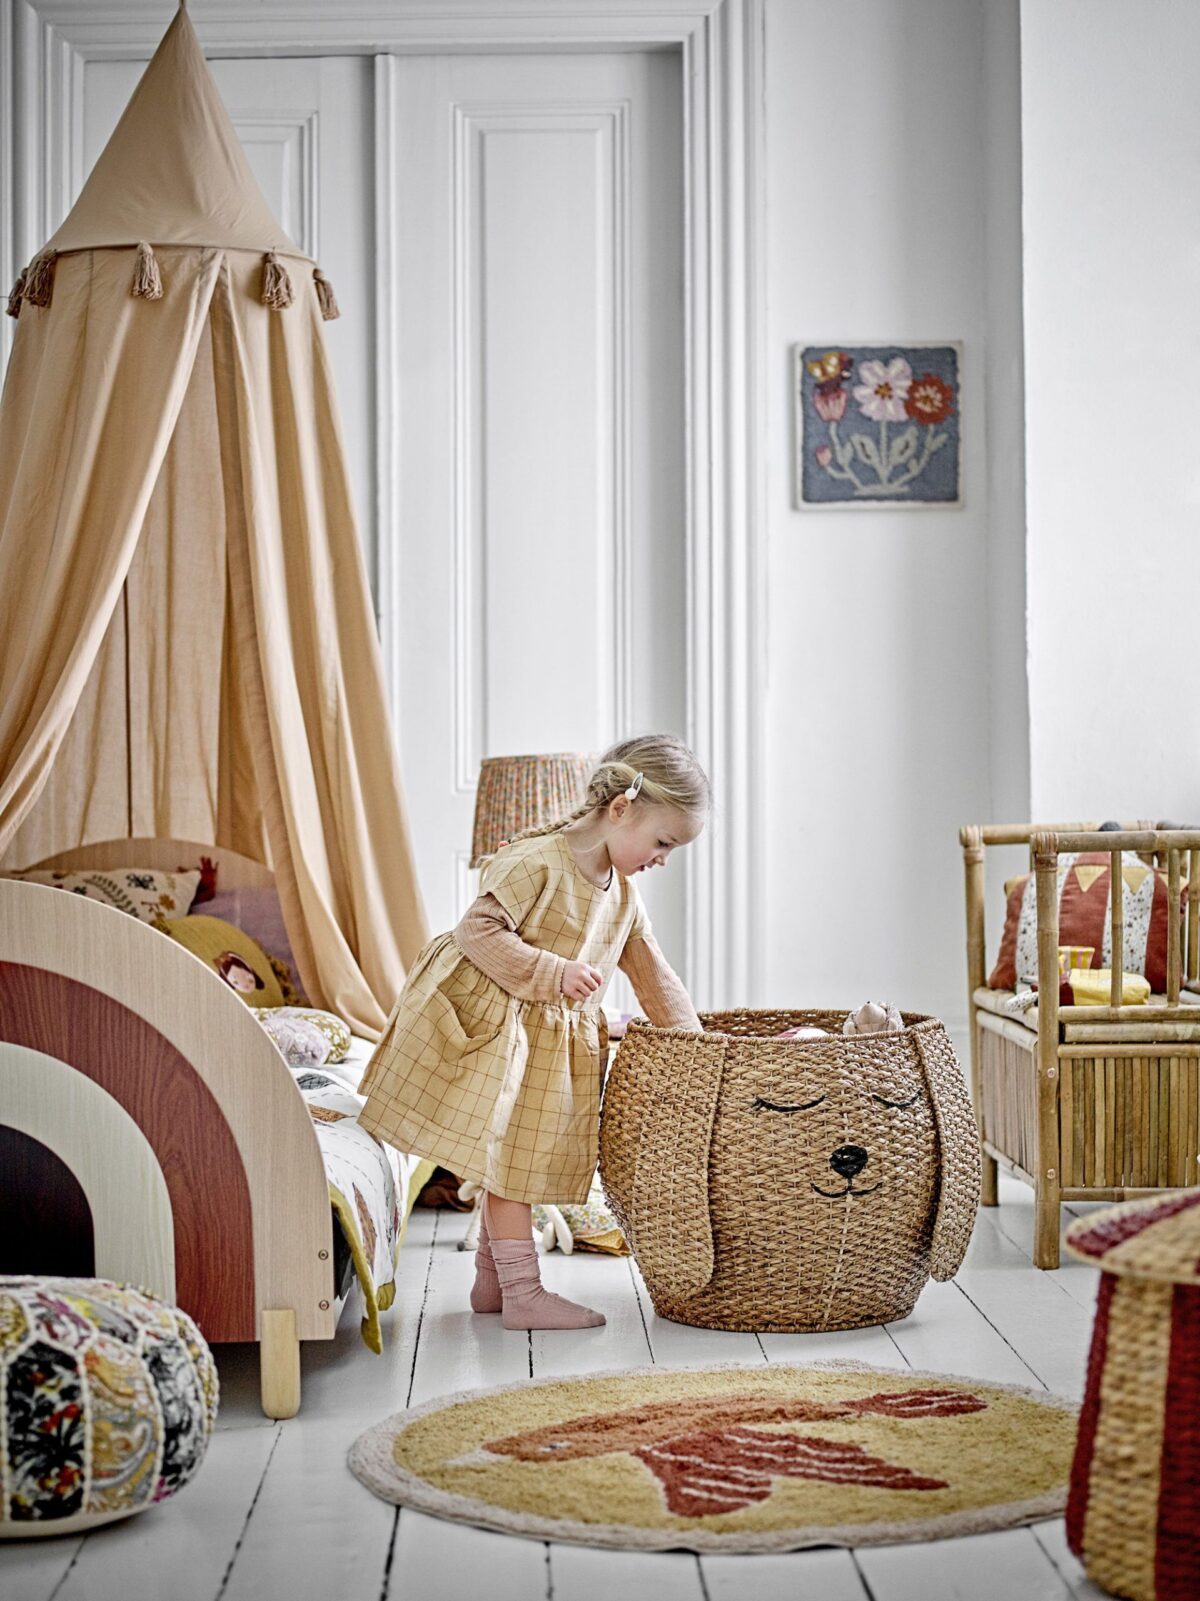 dekoracje i dodatki do pokoju dziecięcego petit deko do pokoju dziecka baldachim kosze na zabawki